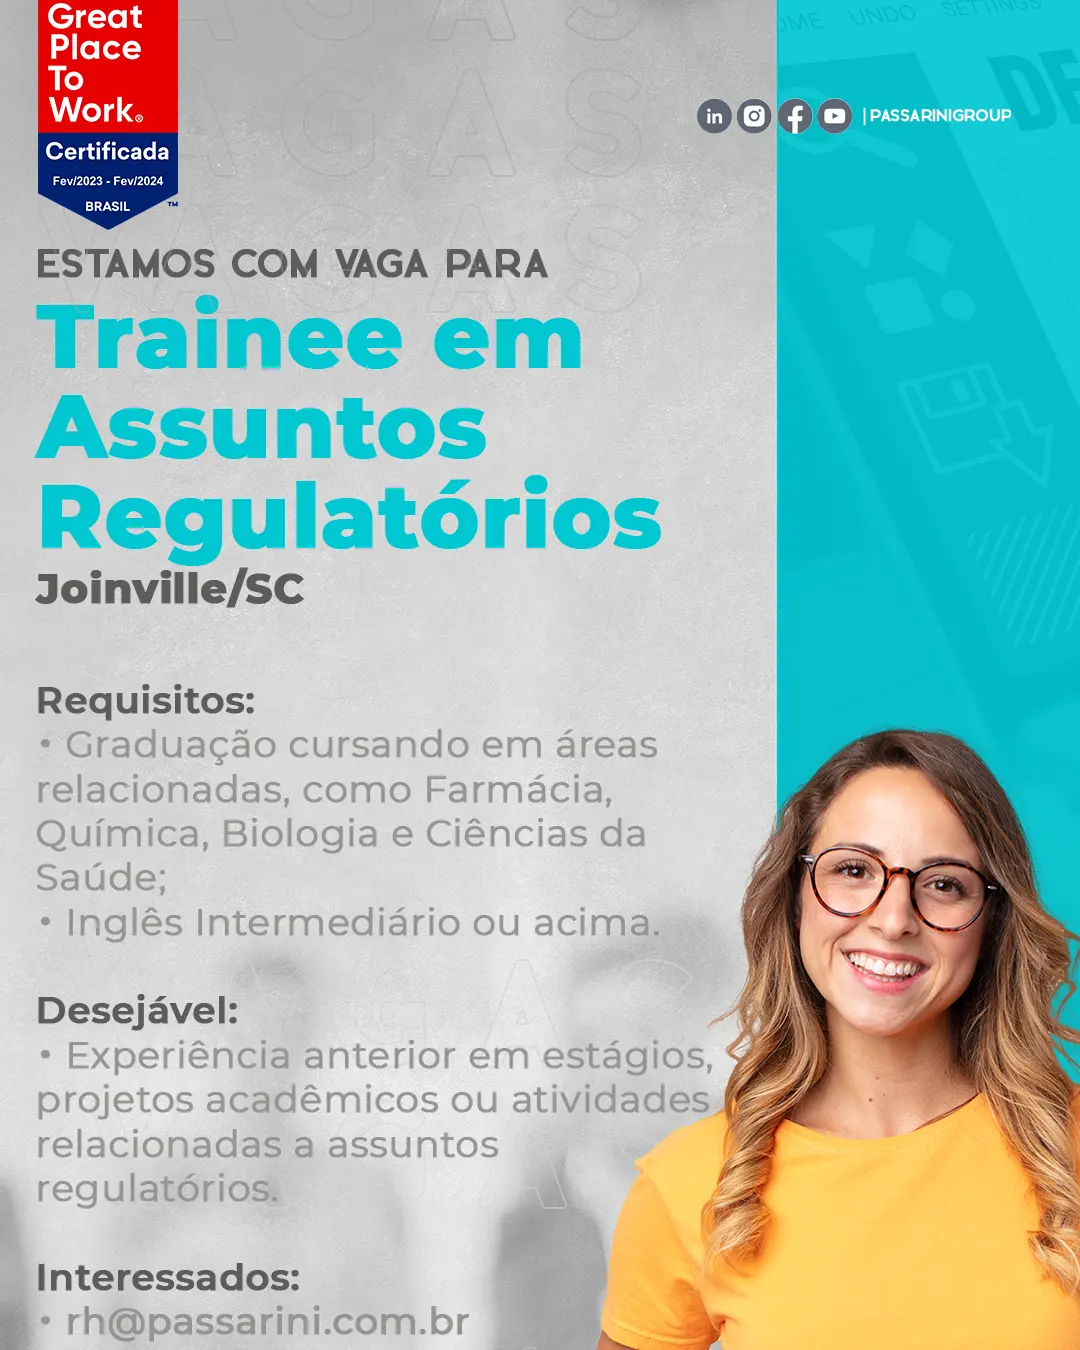  Trainee em Assuntos Regulatórios. (Joinville/SC)